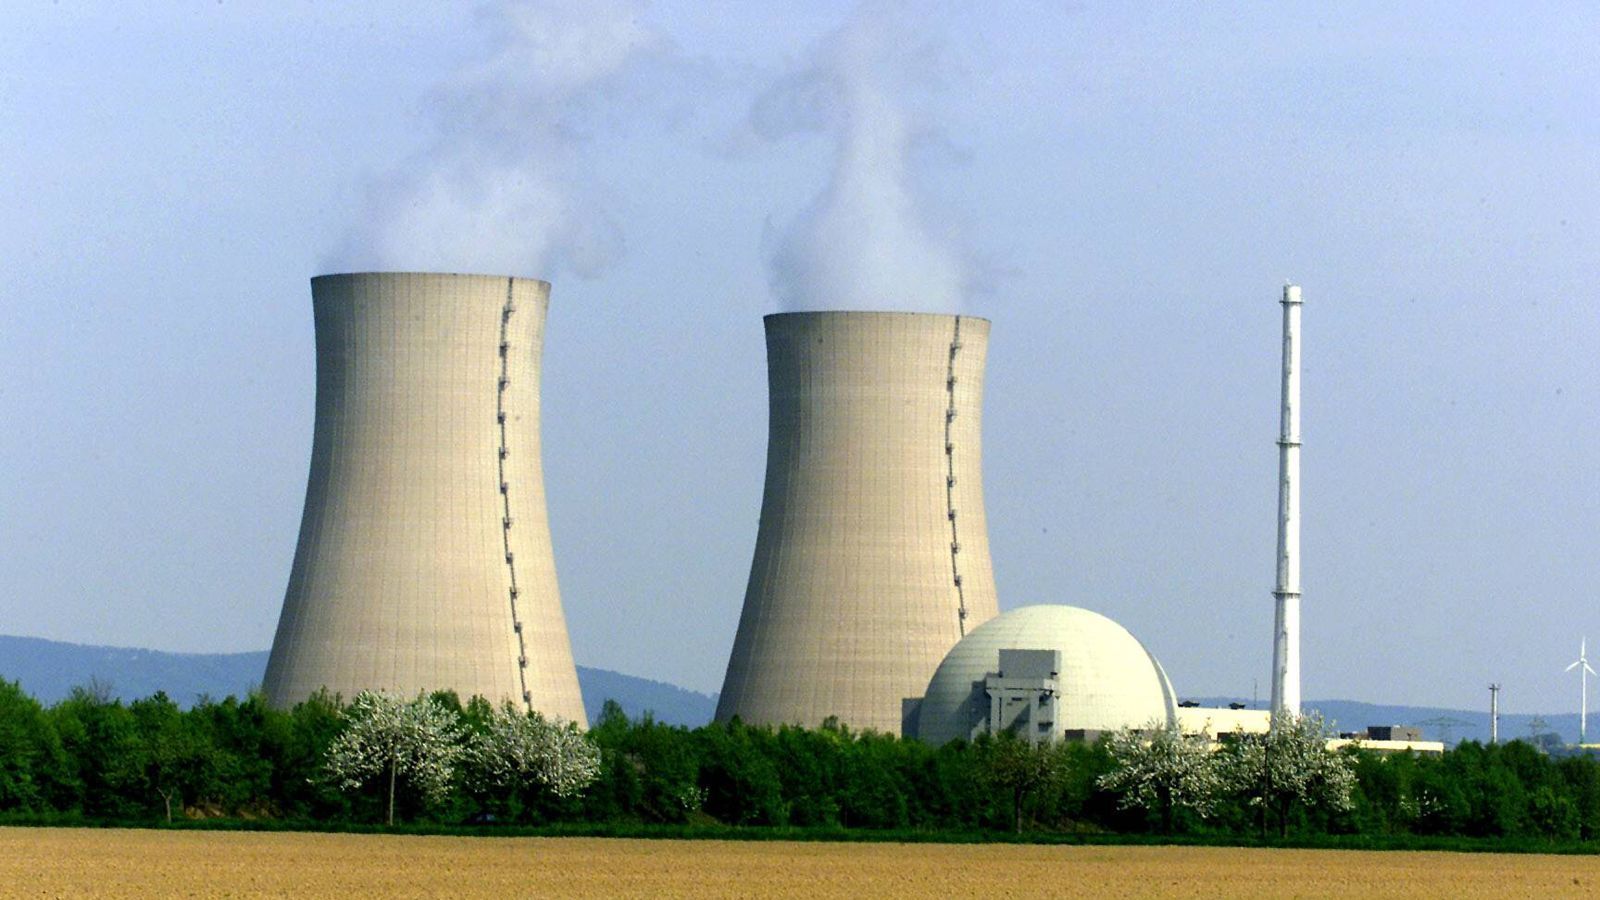 
                <strong>Deutschland beschließt Atomausstieg</strong><br>
                Am 16. Juni 2000 einigt sich die Bundesregierung unter Führung von Bundeskanzler Gerhard Schröder und die Energiewirtschaft auf einen Ausstieg aus der Atomenergie. Dem Entschluss gehen jahrelange Proteste voraus, die das Motto "Atomkraft? Nein Danke" haben.
              